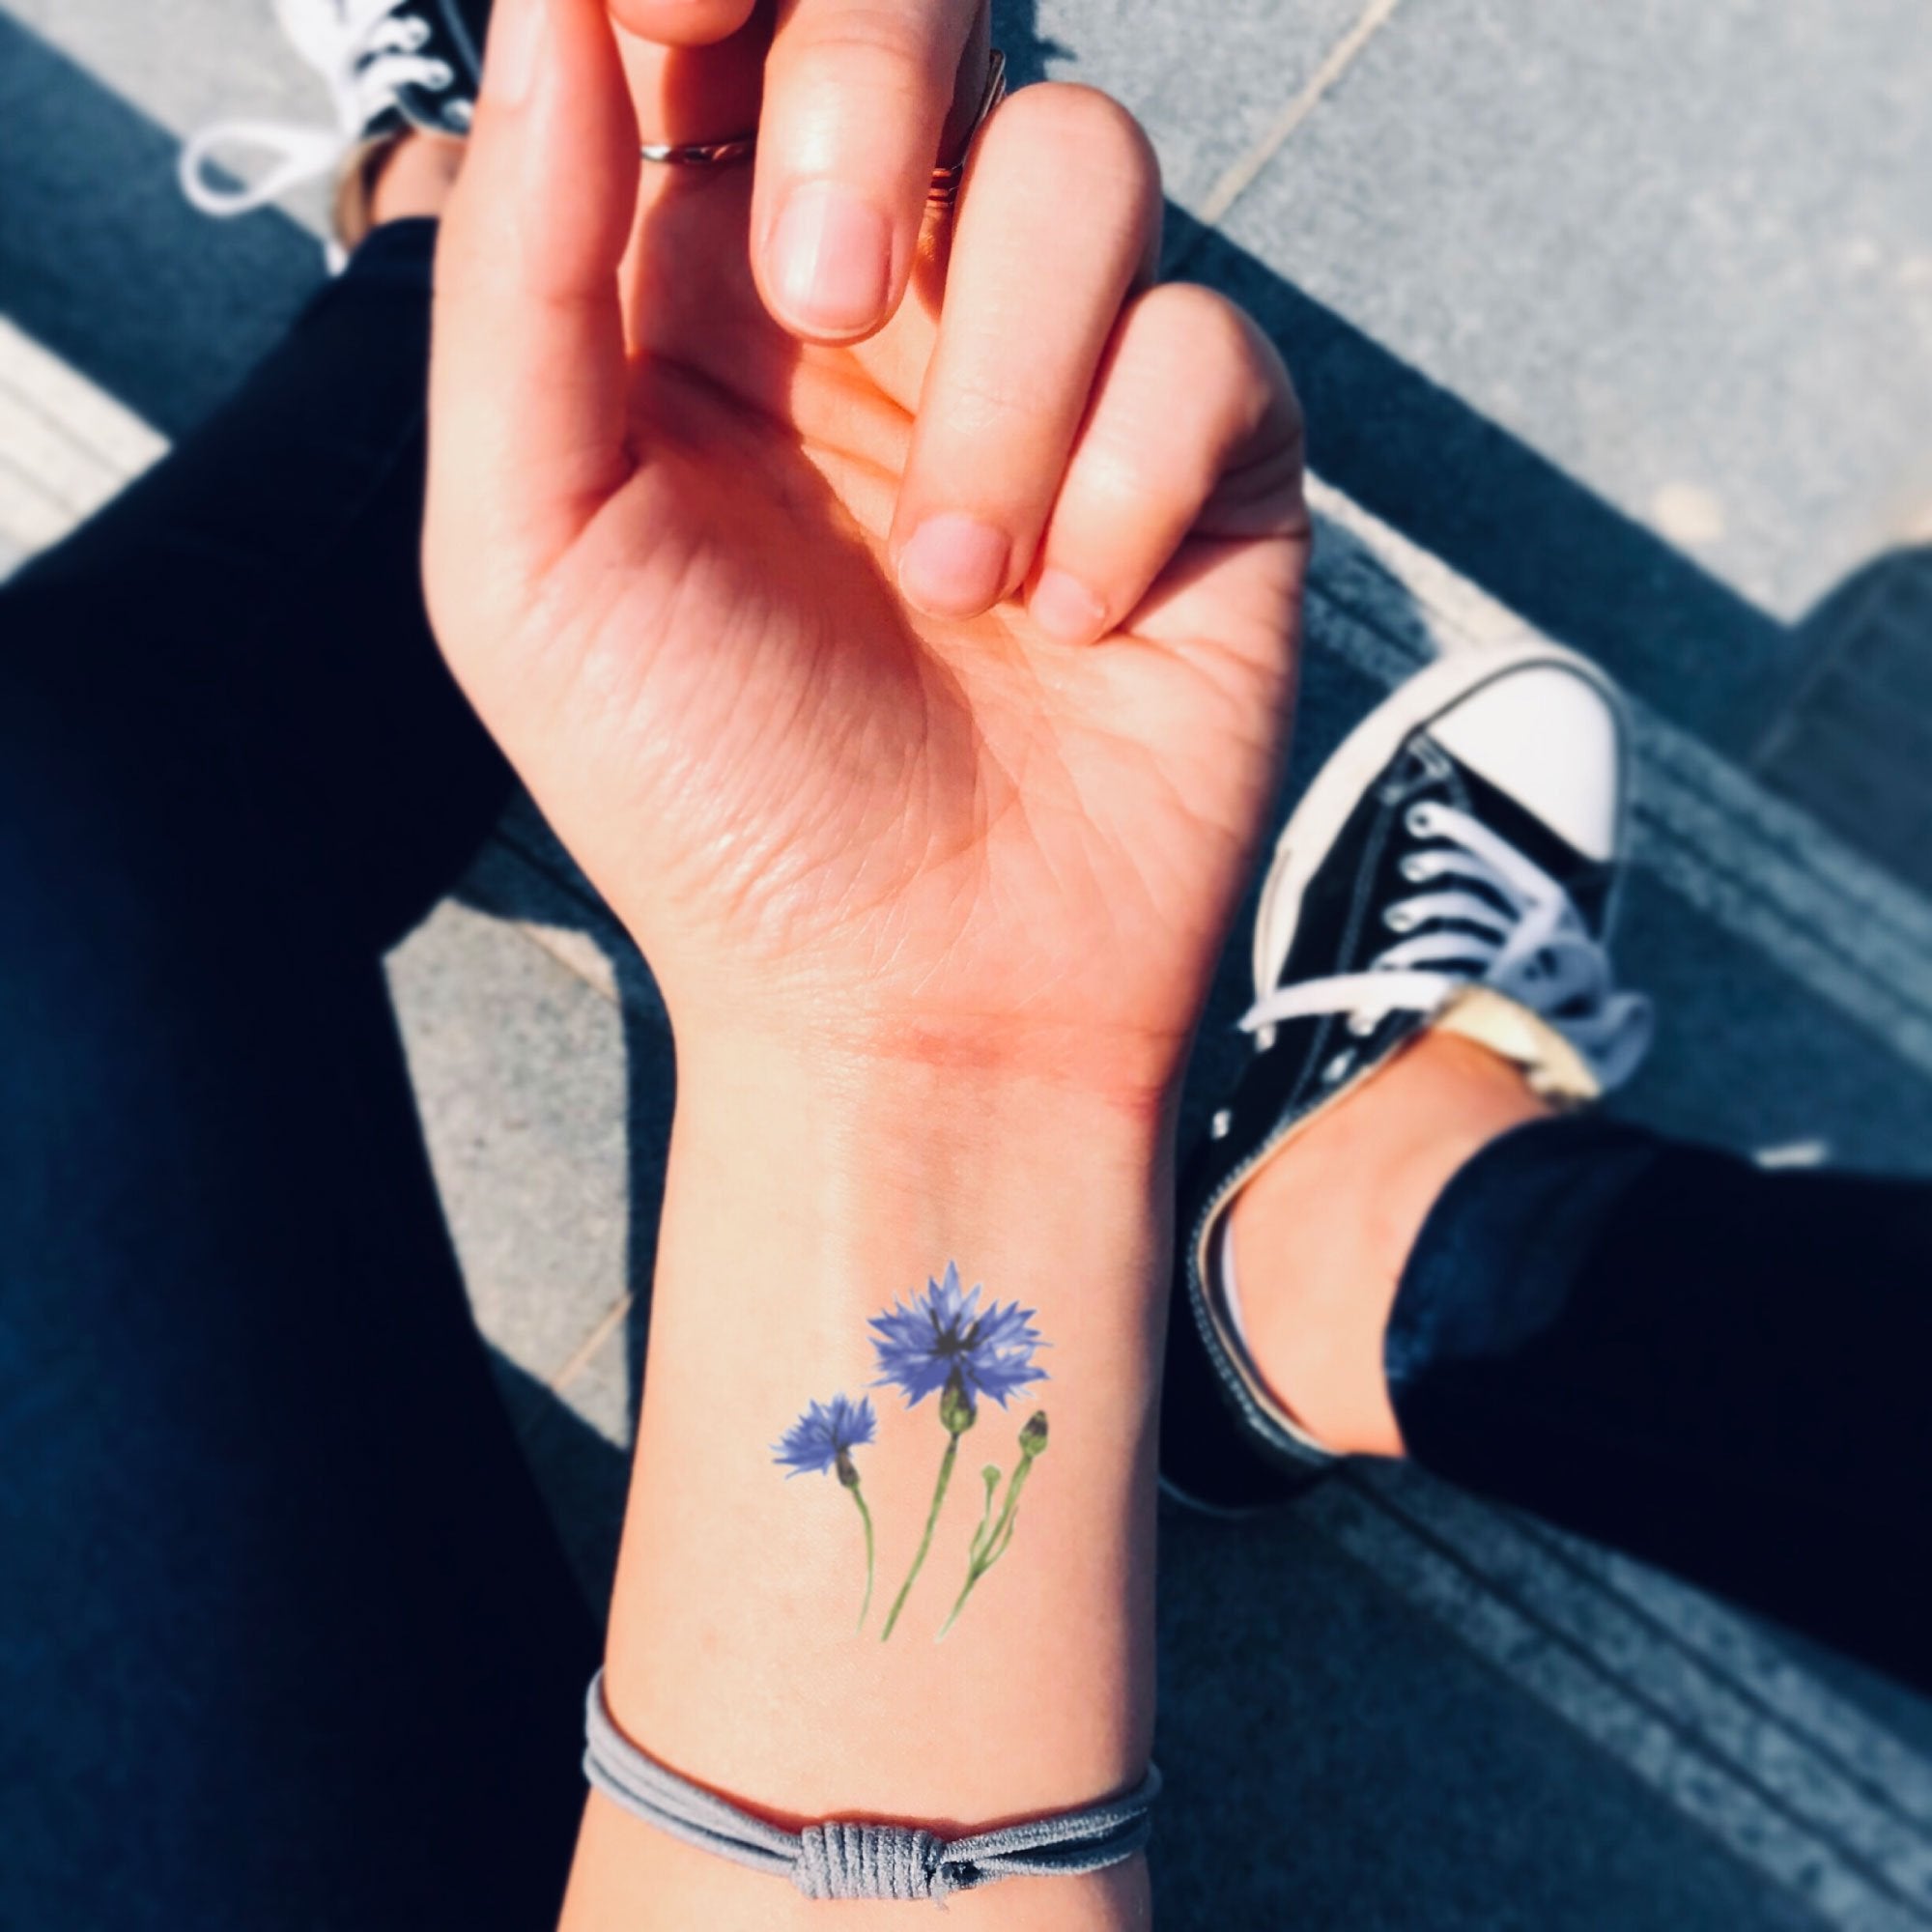 Fine line flower tattoos on the left wrist.